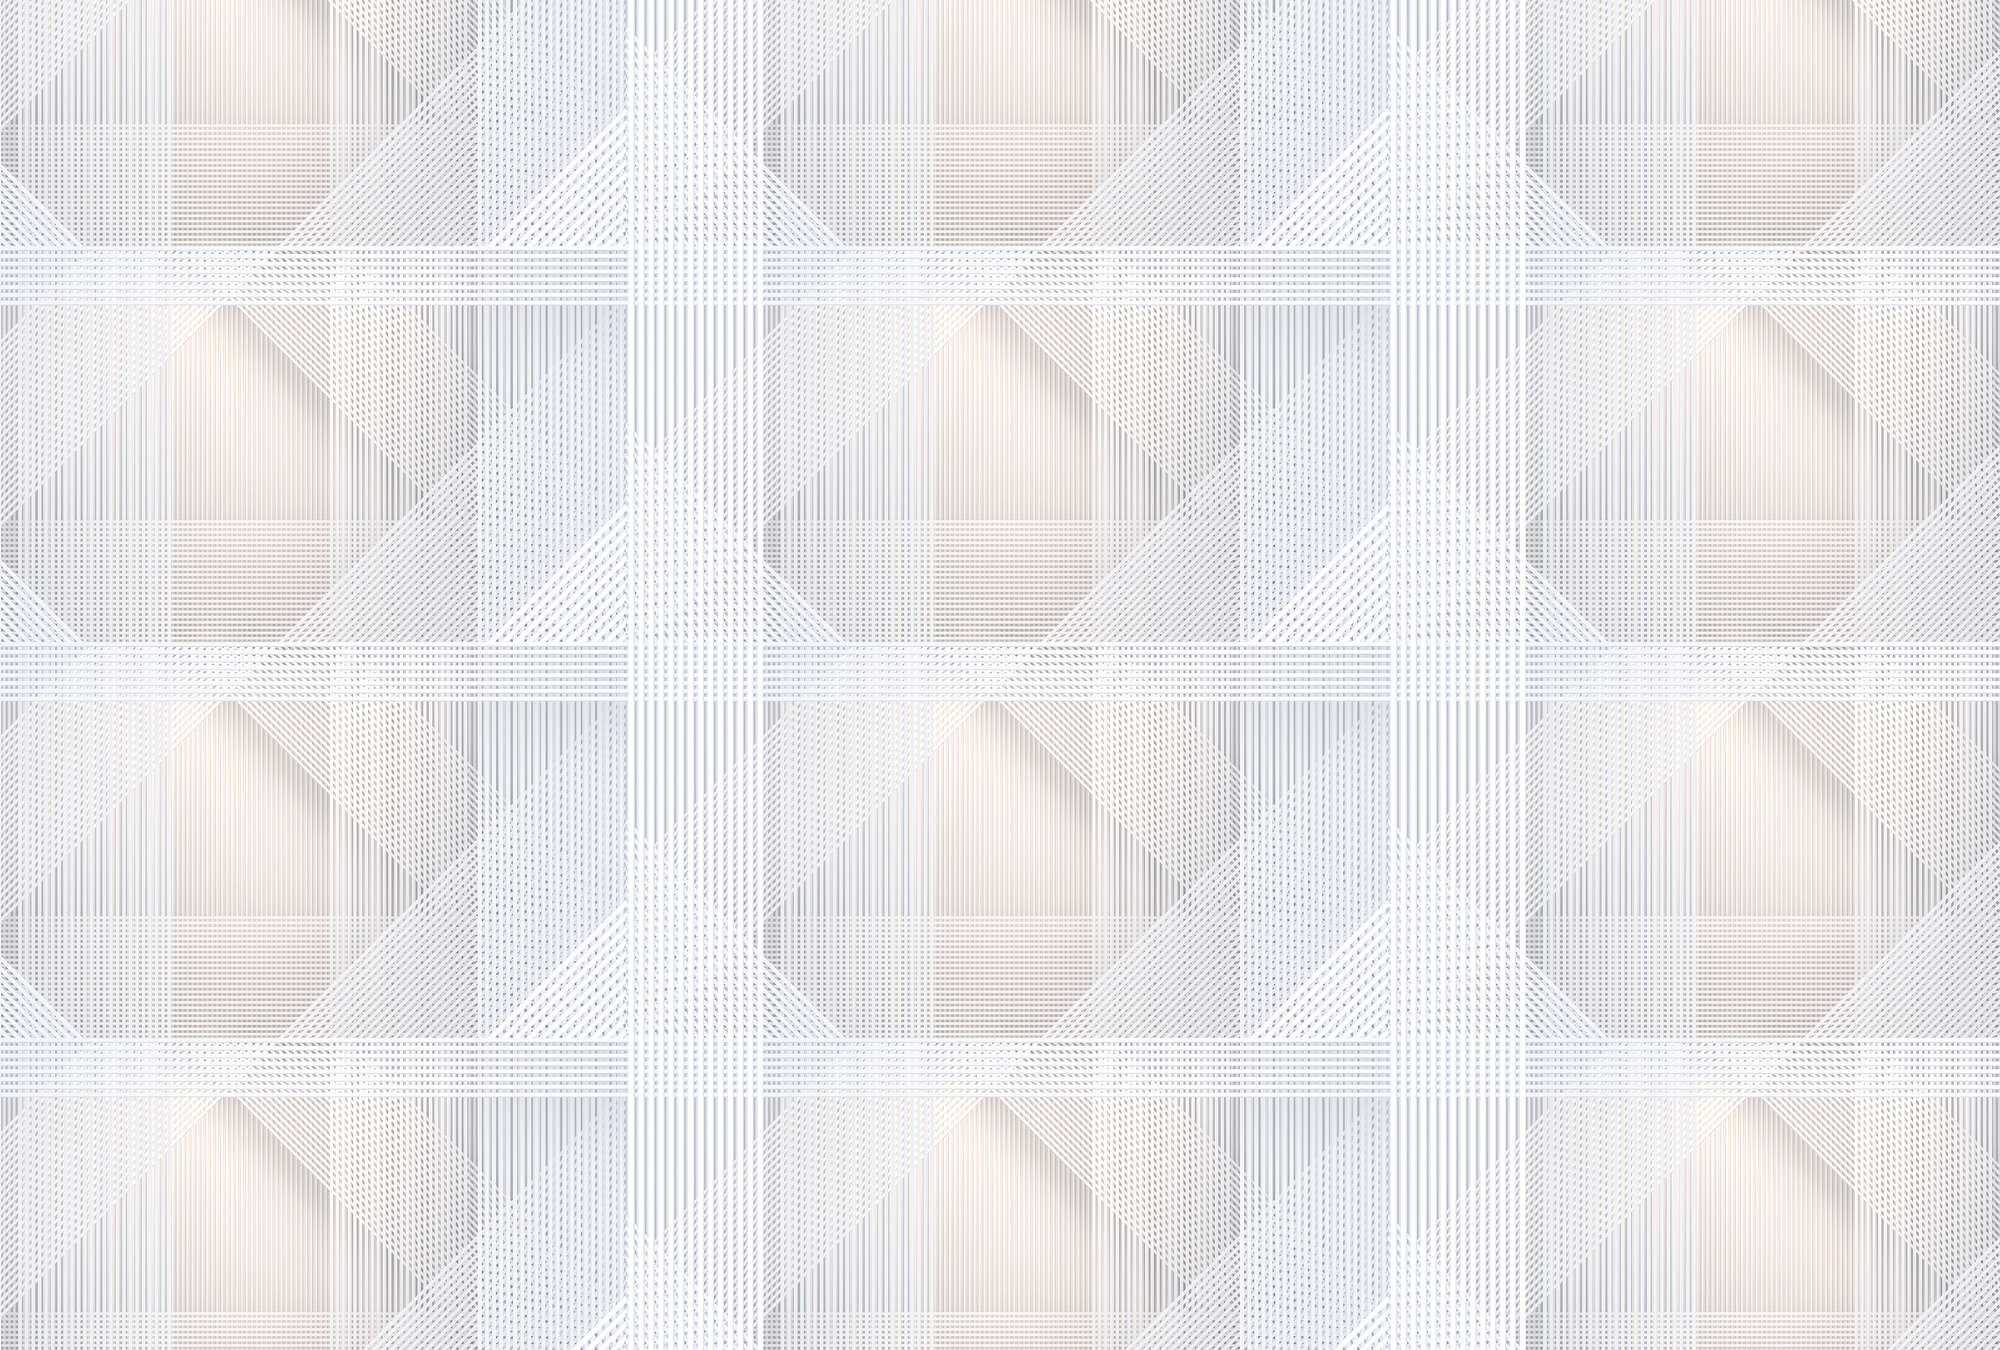             Strings 1 - Fototapete geometrisches Streifen Muster – Grau, Orange | Struktur Vlies
        